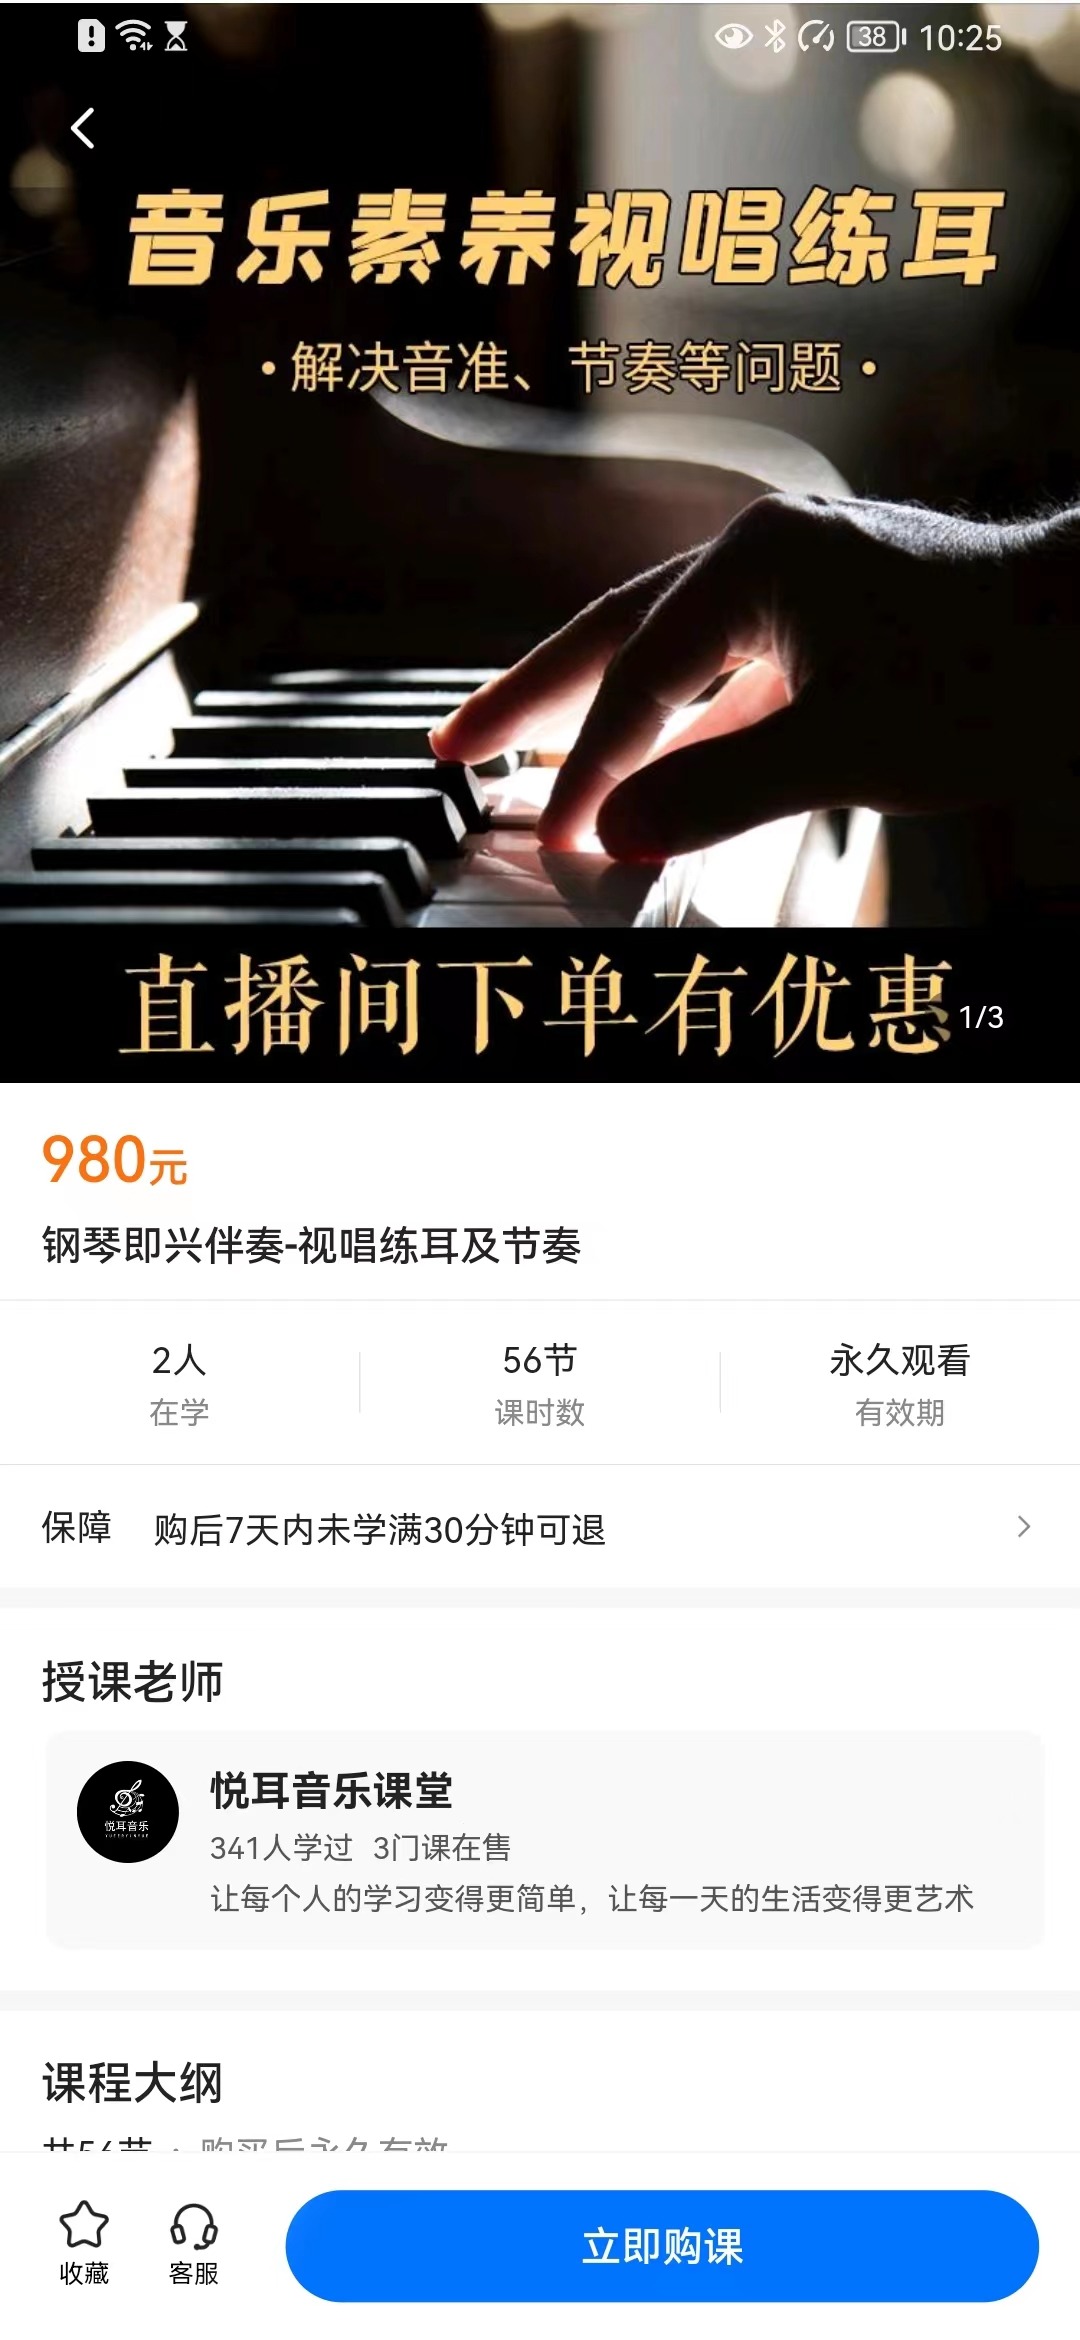 【众筹39.9[红包]·《钢琴即兴伴奏-视唱练耳及节奏》】